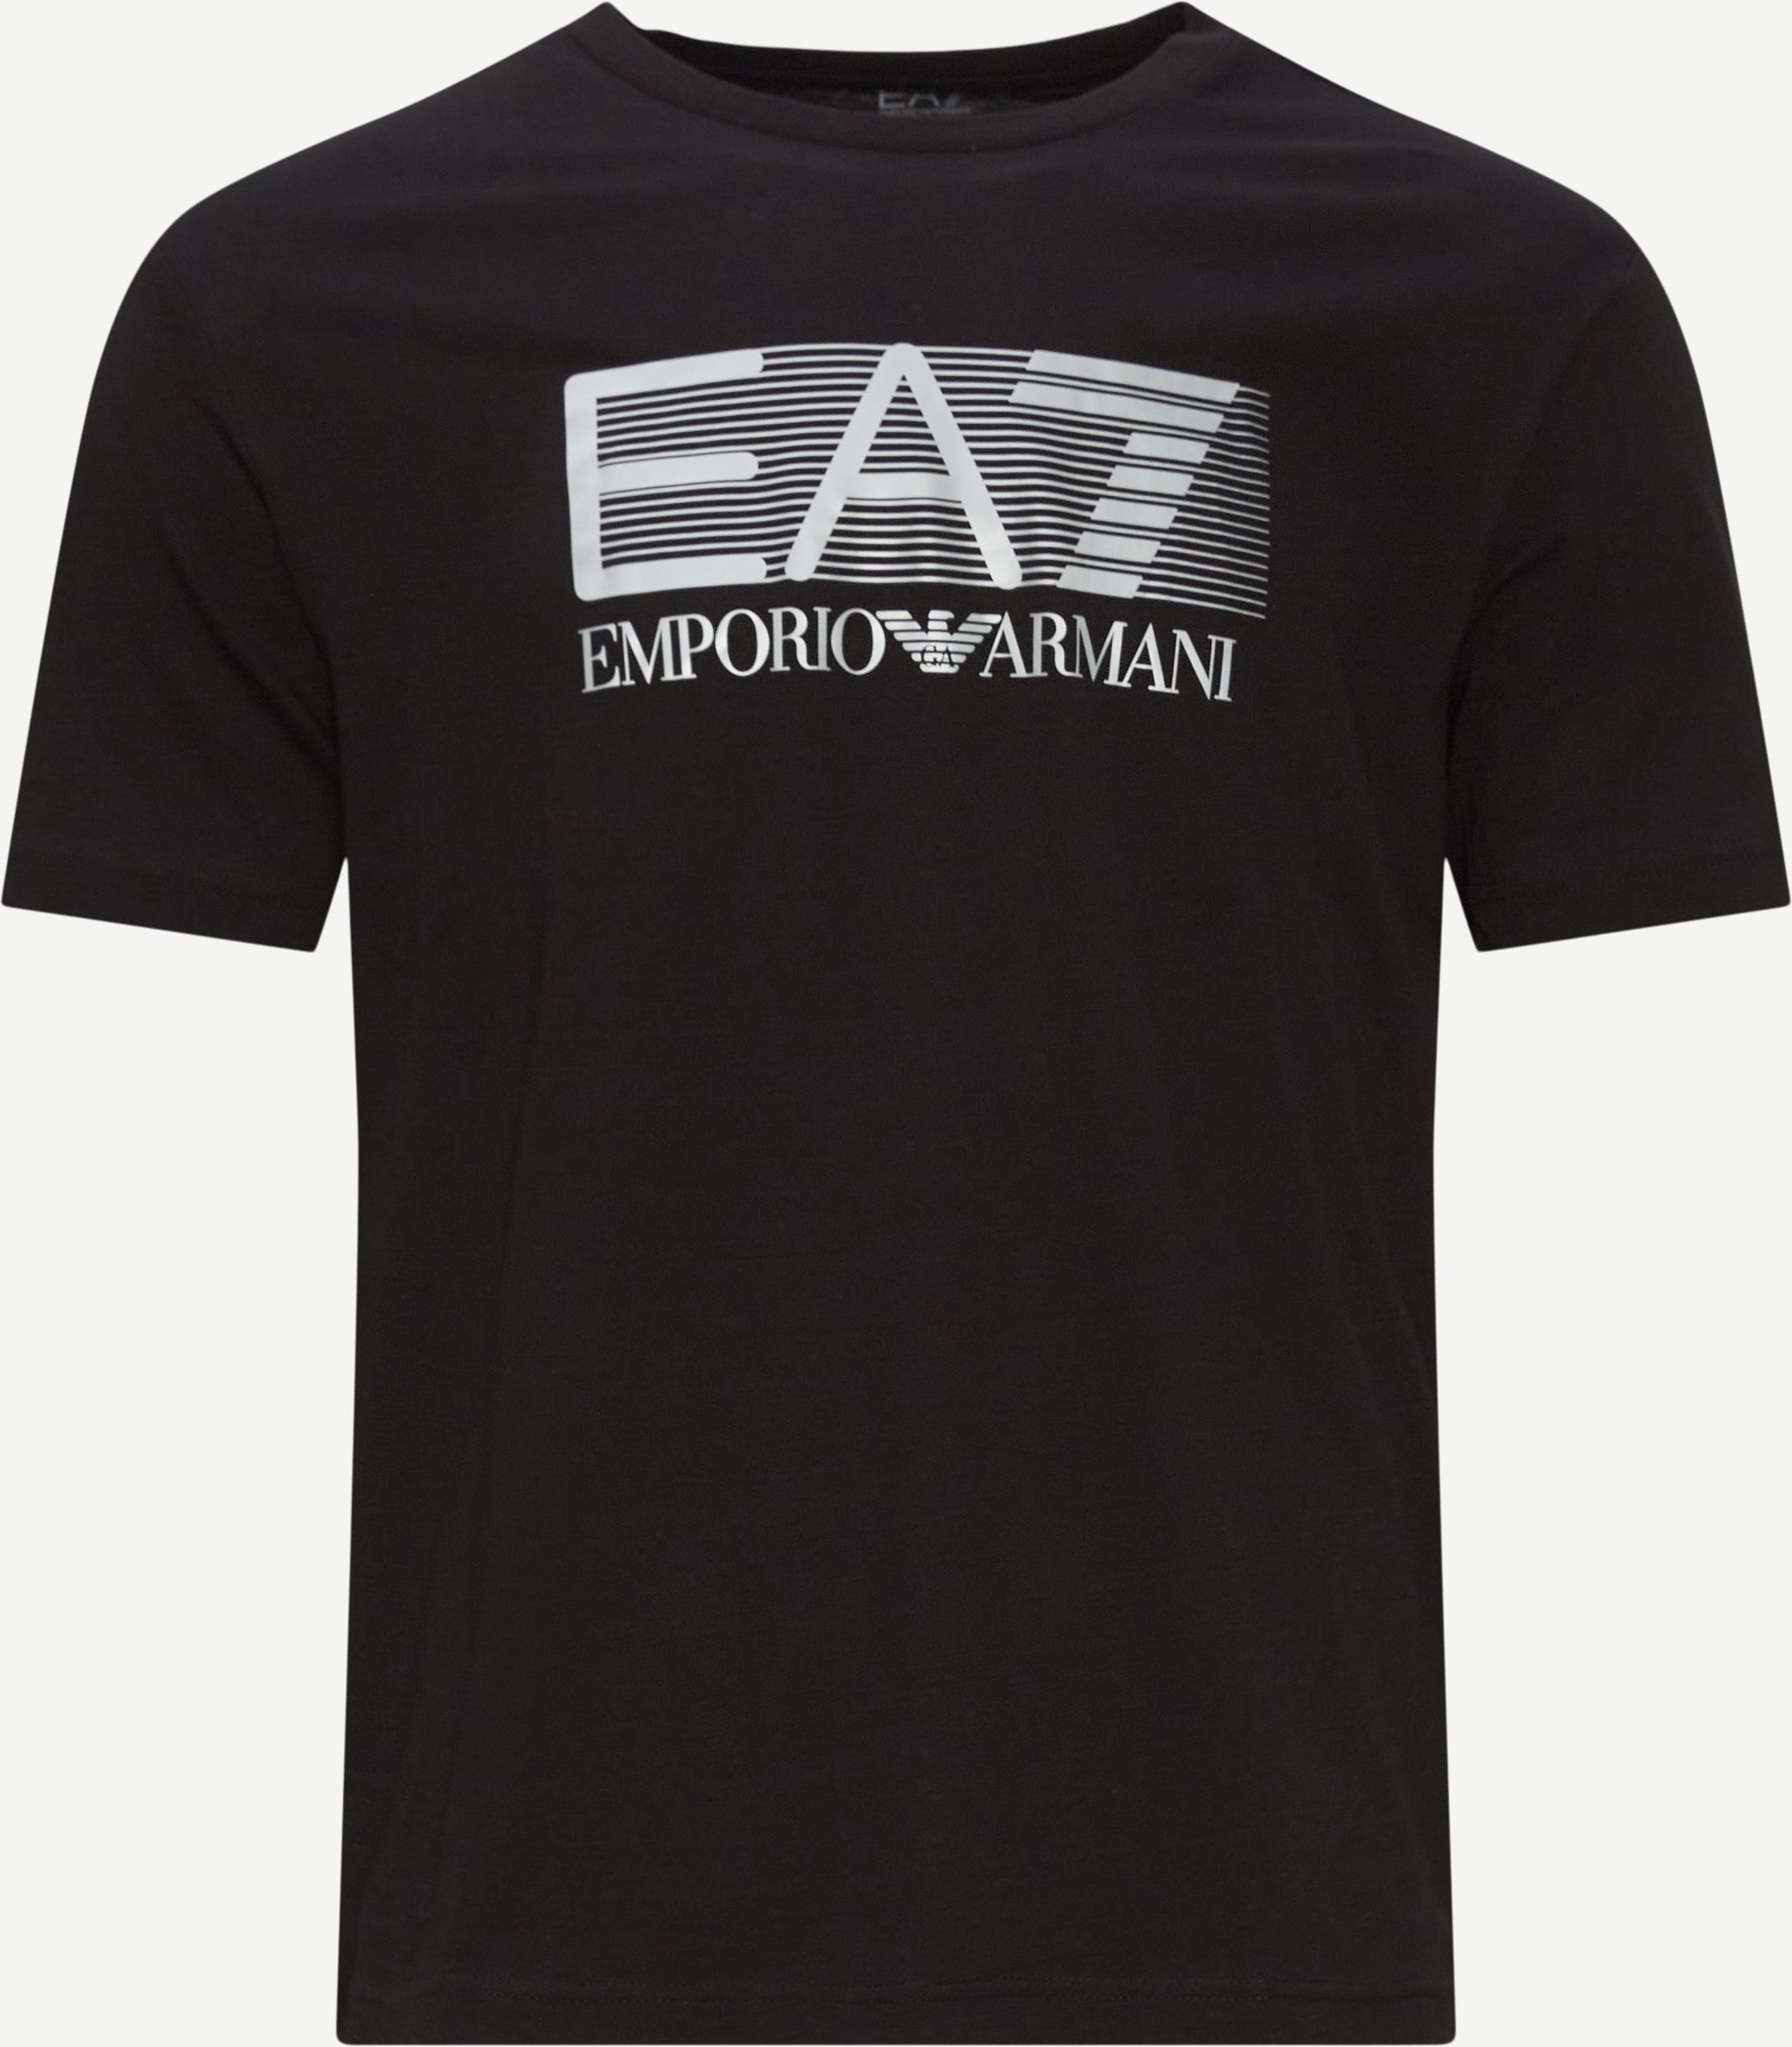 EA7 T-shirts PJM9Z 6LPT81 Black